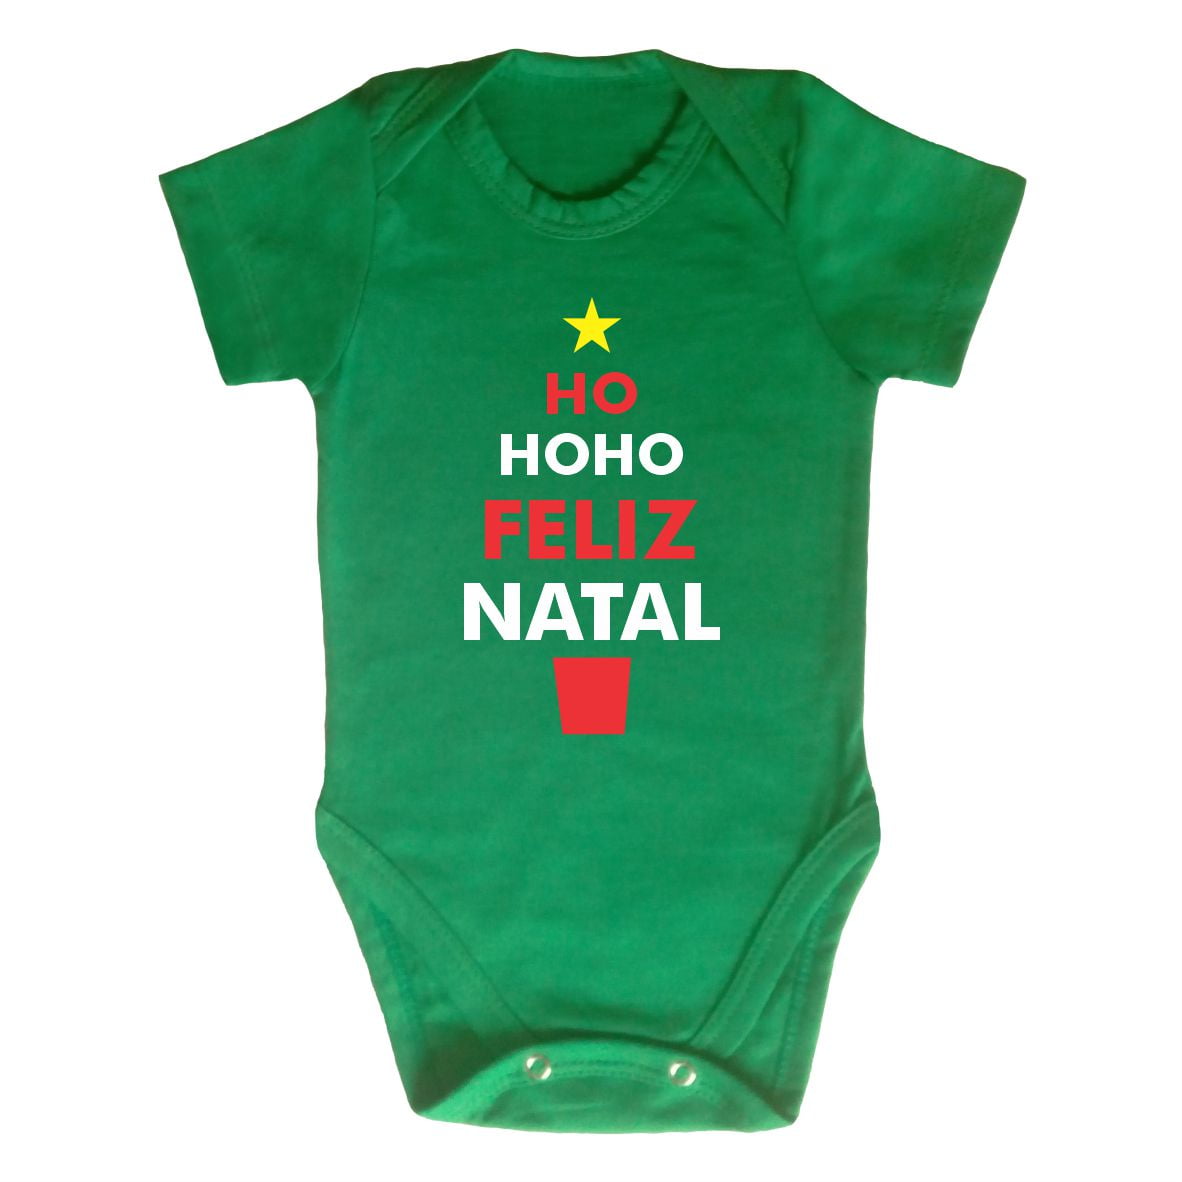 Kit Família HoHoHo Feliz Natal - Vermelho - Atelier Bebê Bolê